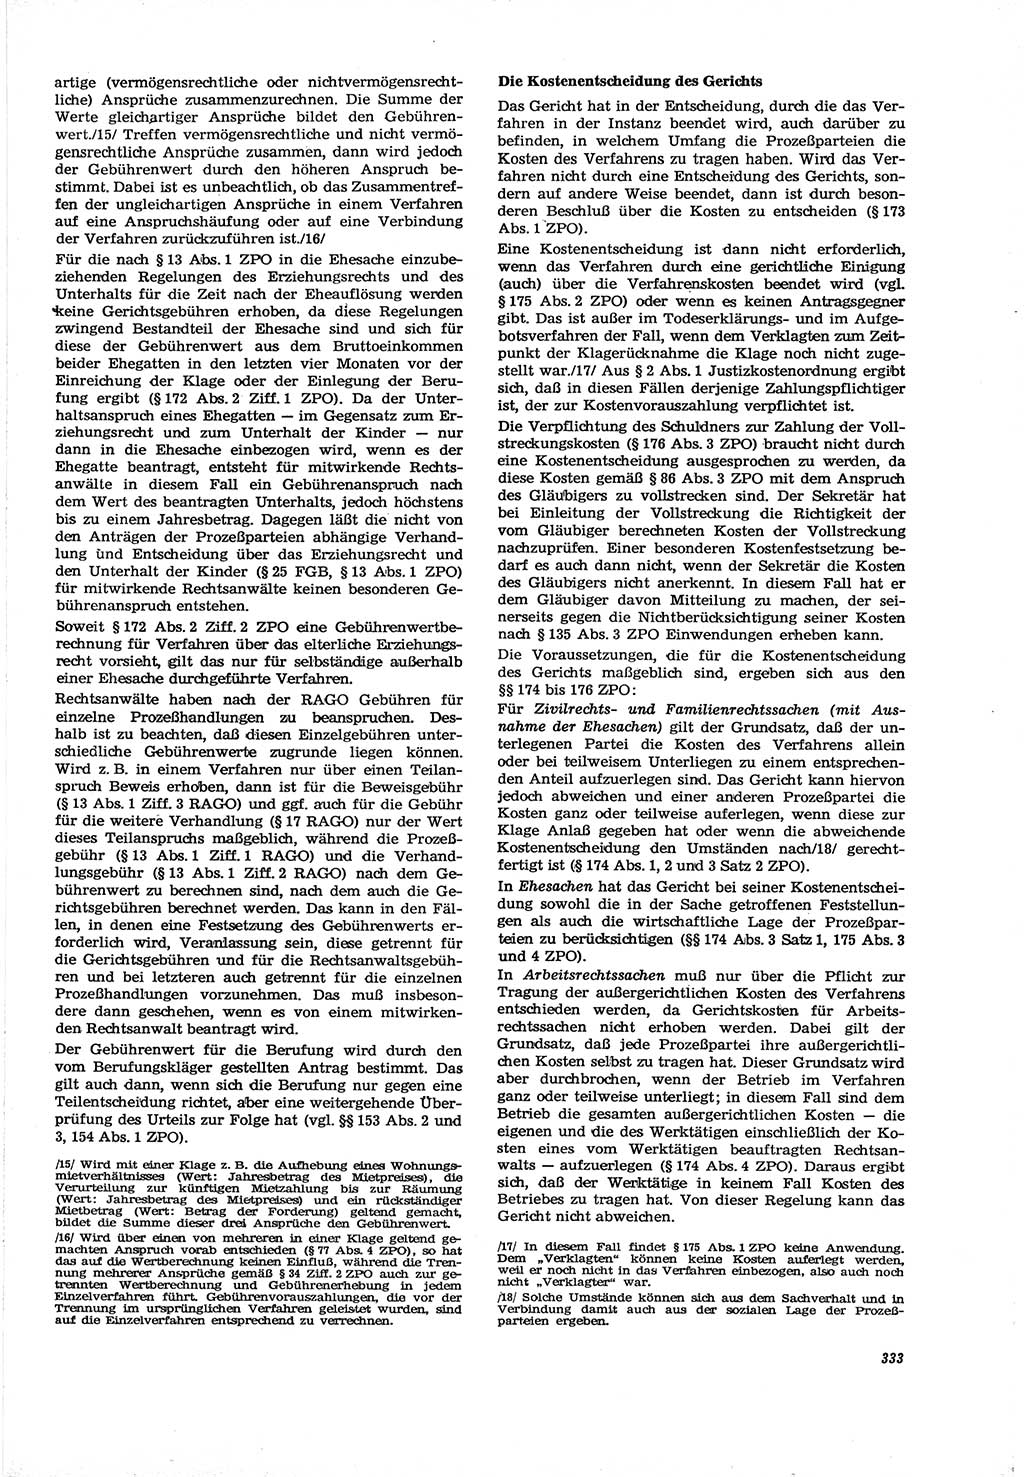 Neue Justiz (NJ), Zeitschrift für Recht und Rechtswissenschaft [Deutsche Demokratische Republik (DDR)], 30. Jahrgang 1976, Seite 333 (NJ DDR 1976, S. 333)